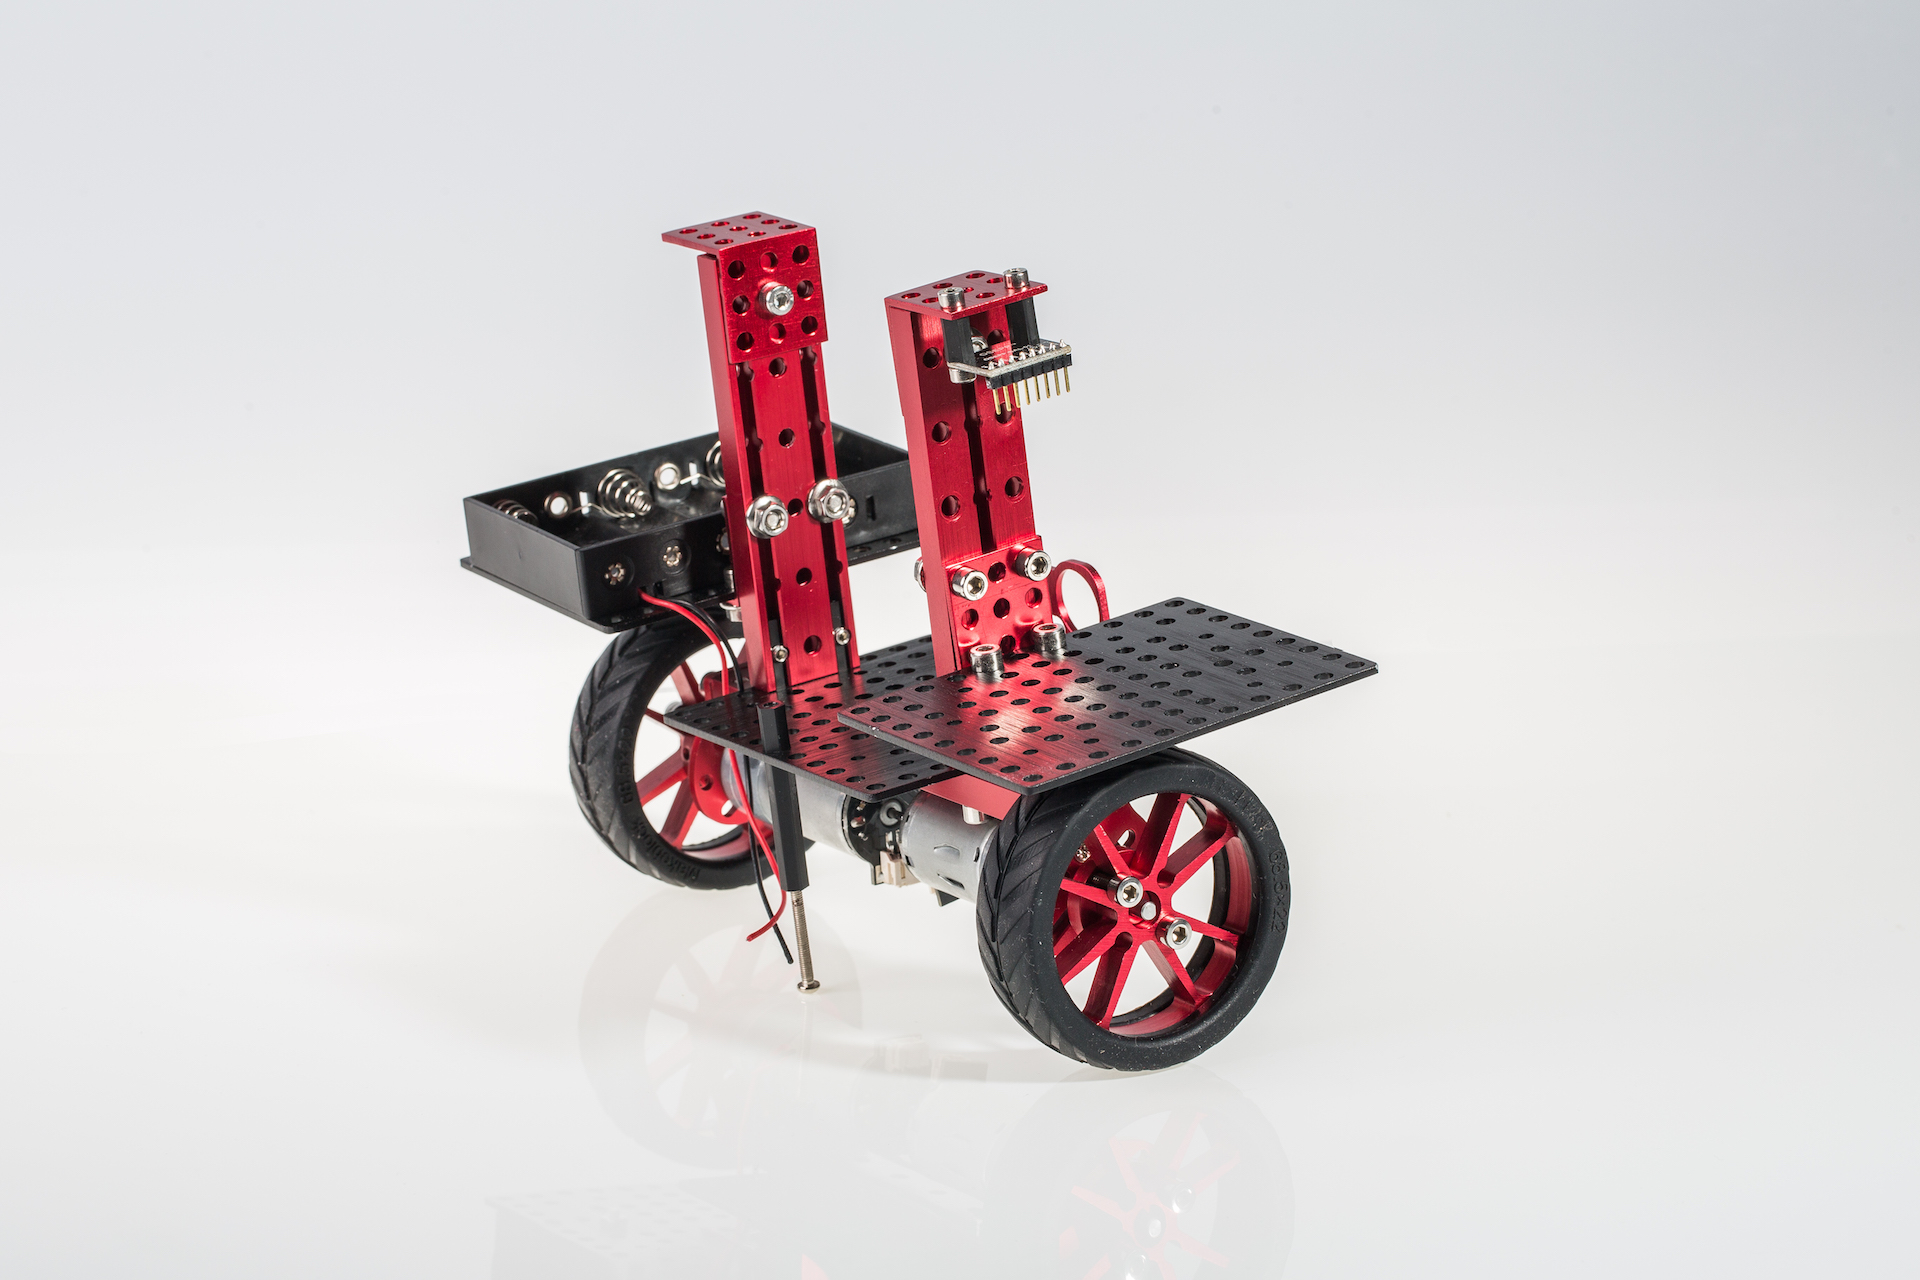 2-Wheel Balancing Mechanical Kit- Click to Enlarge